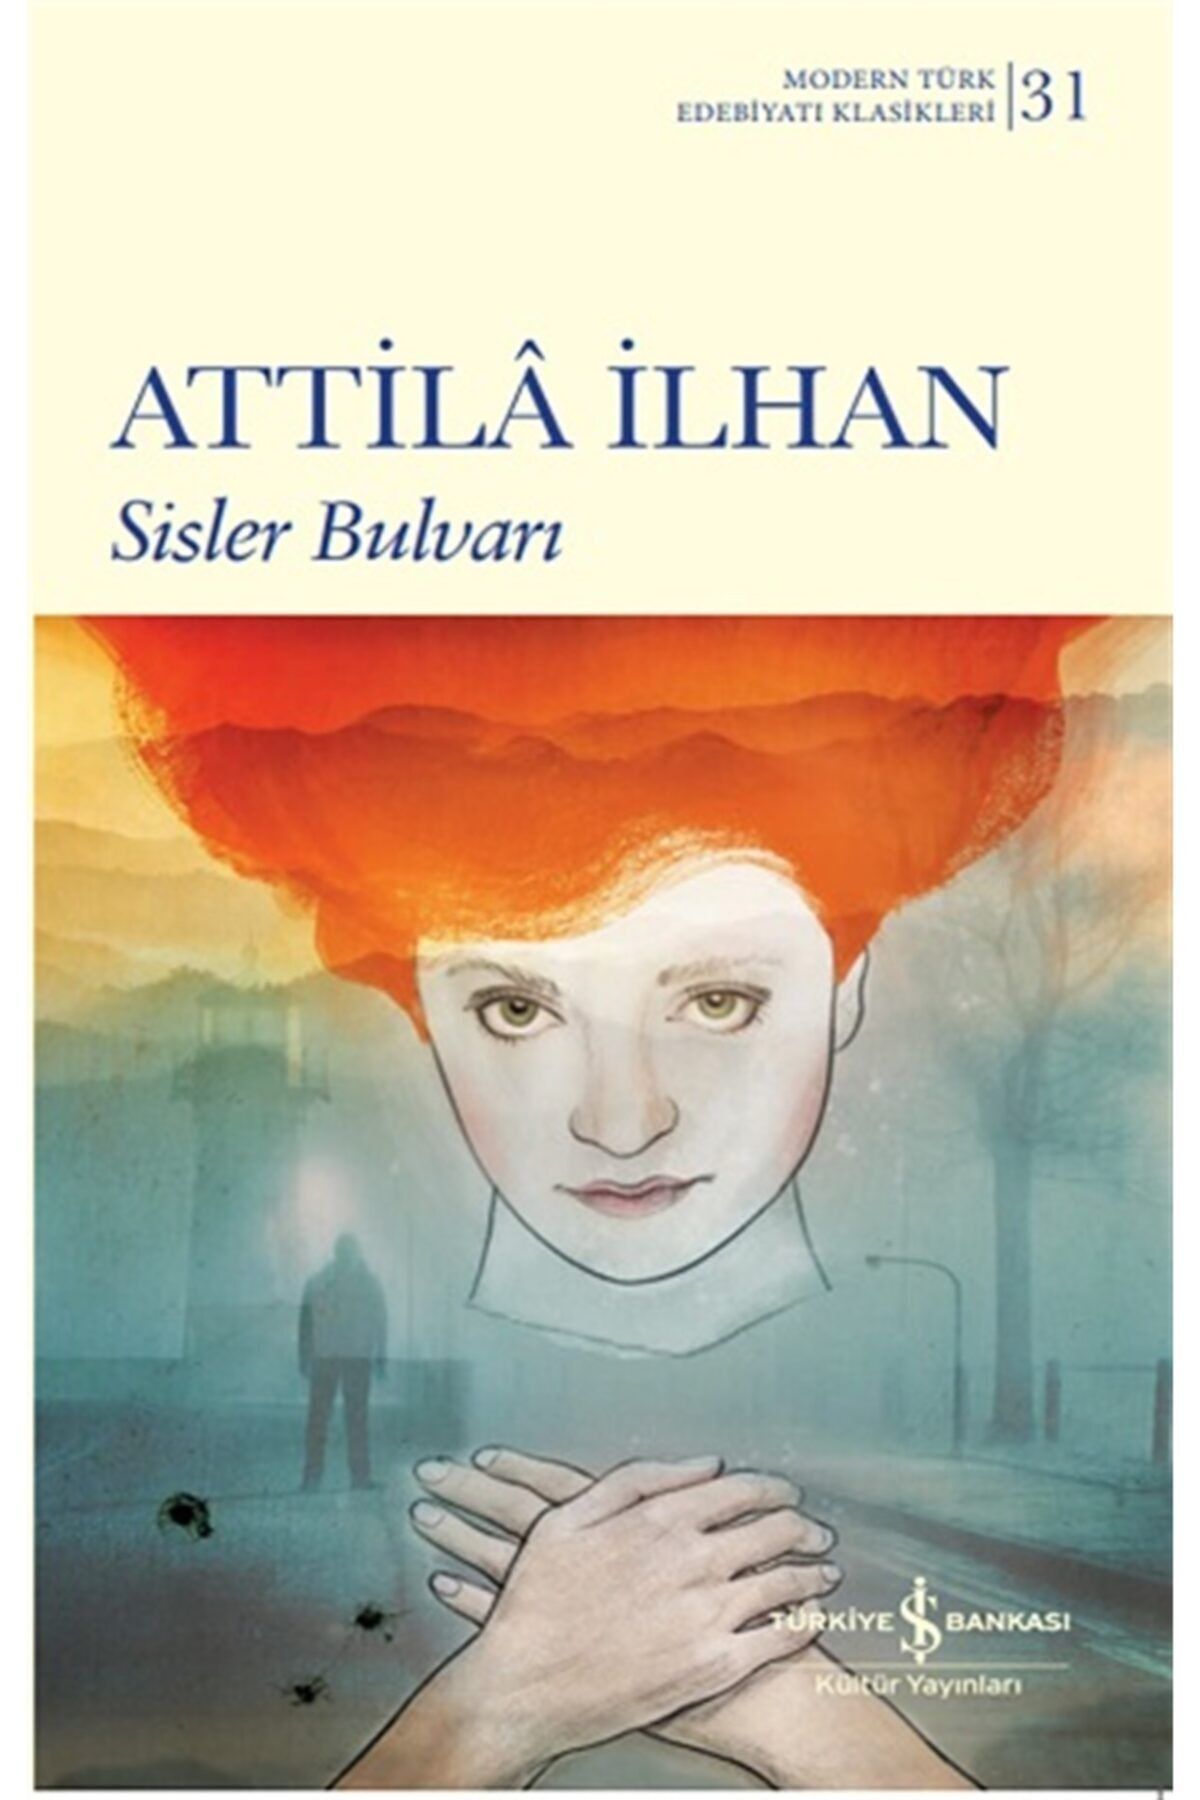 Türkiye İş Bankası Kültür Yayınları Sisler Bulvarı (ciltli), Attila Ilhan, , Sisler Bulvarı (ciltli) Kitabı,